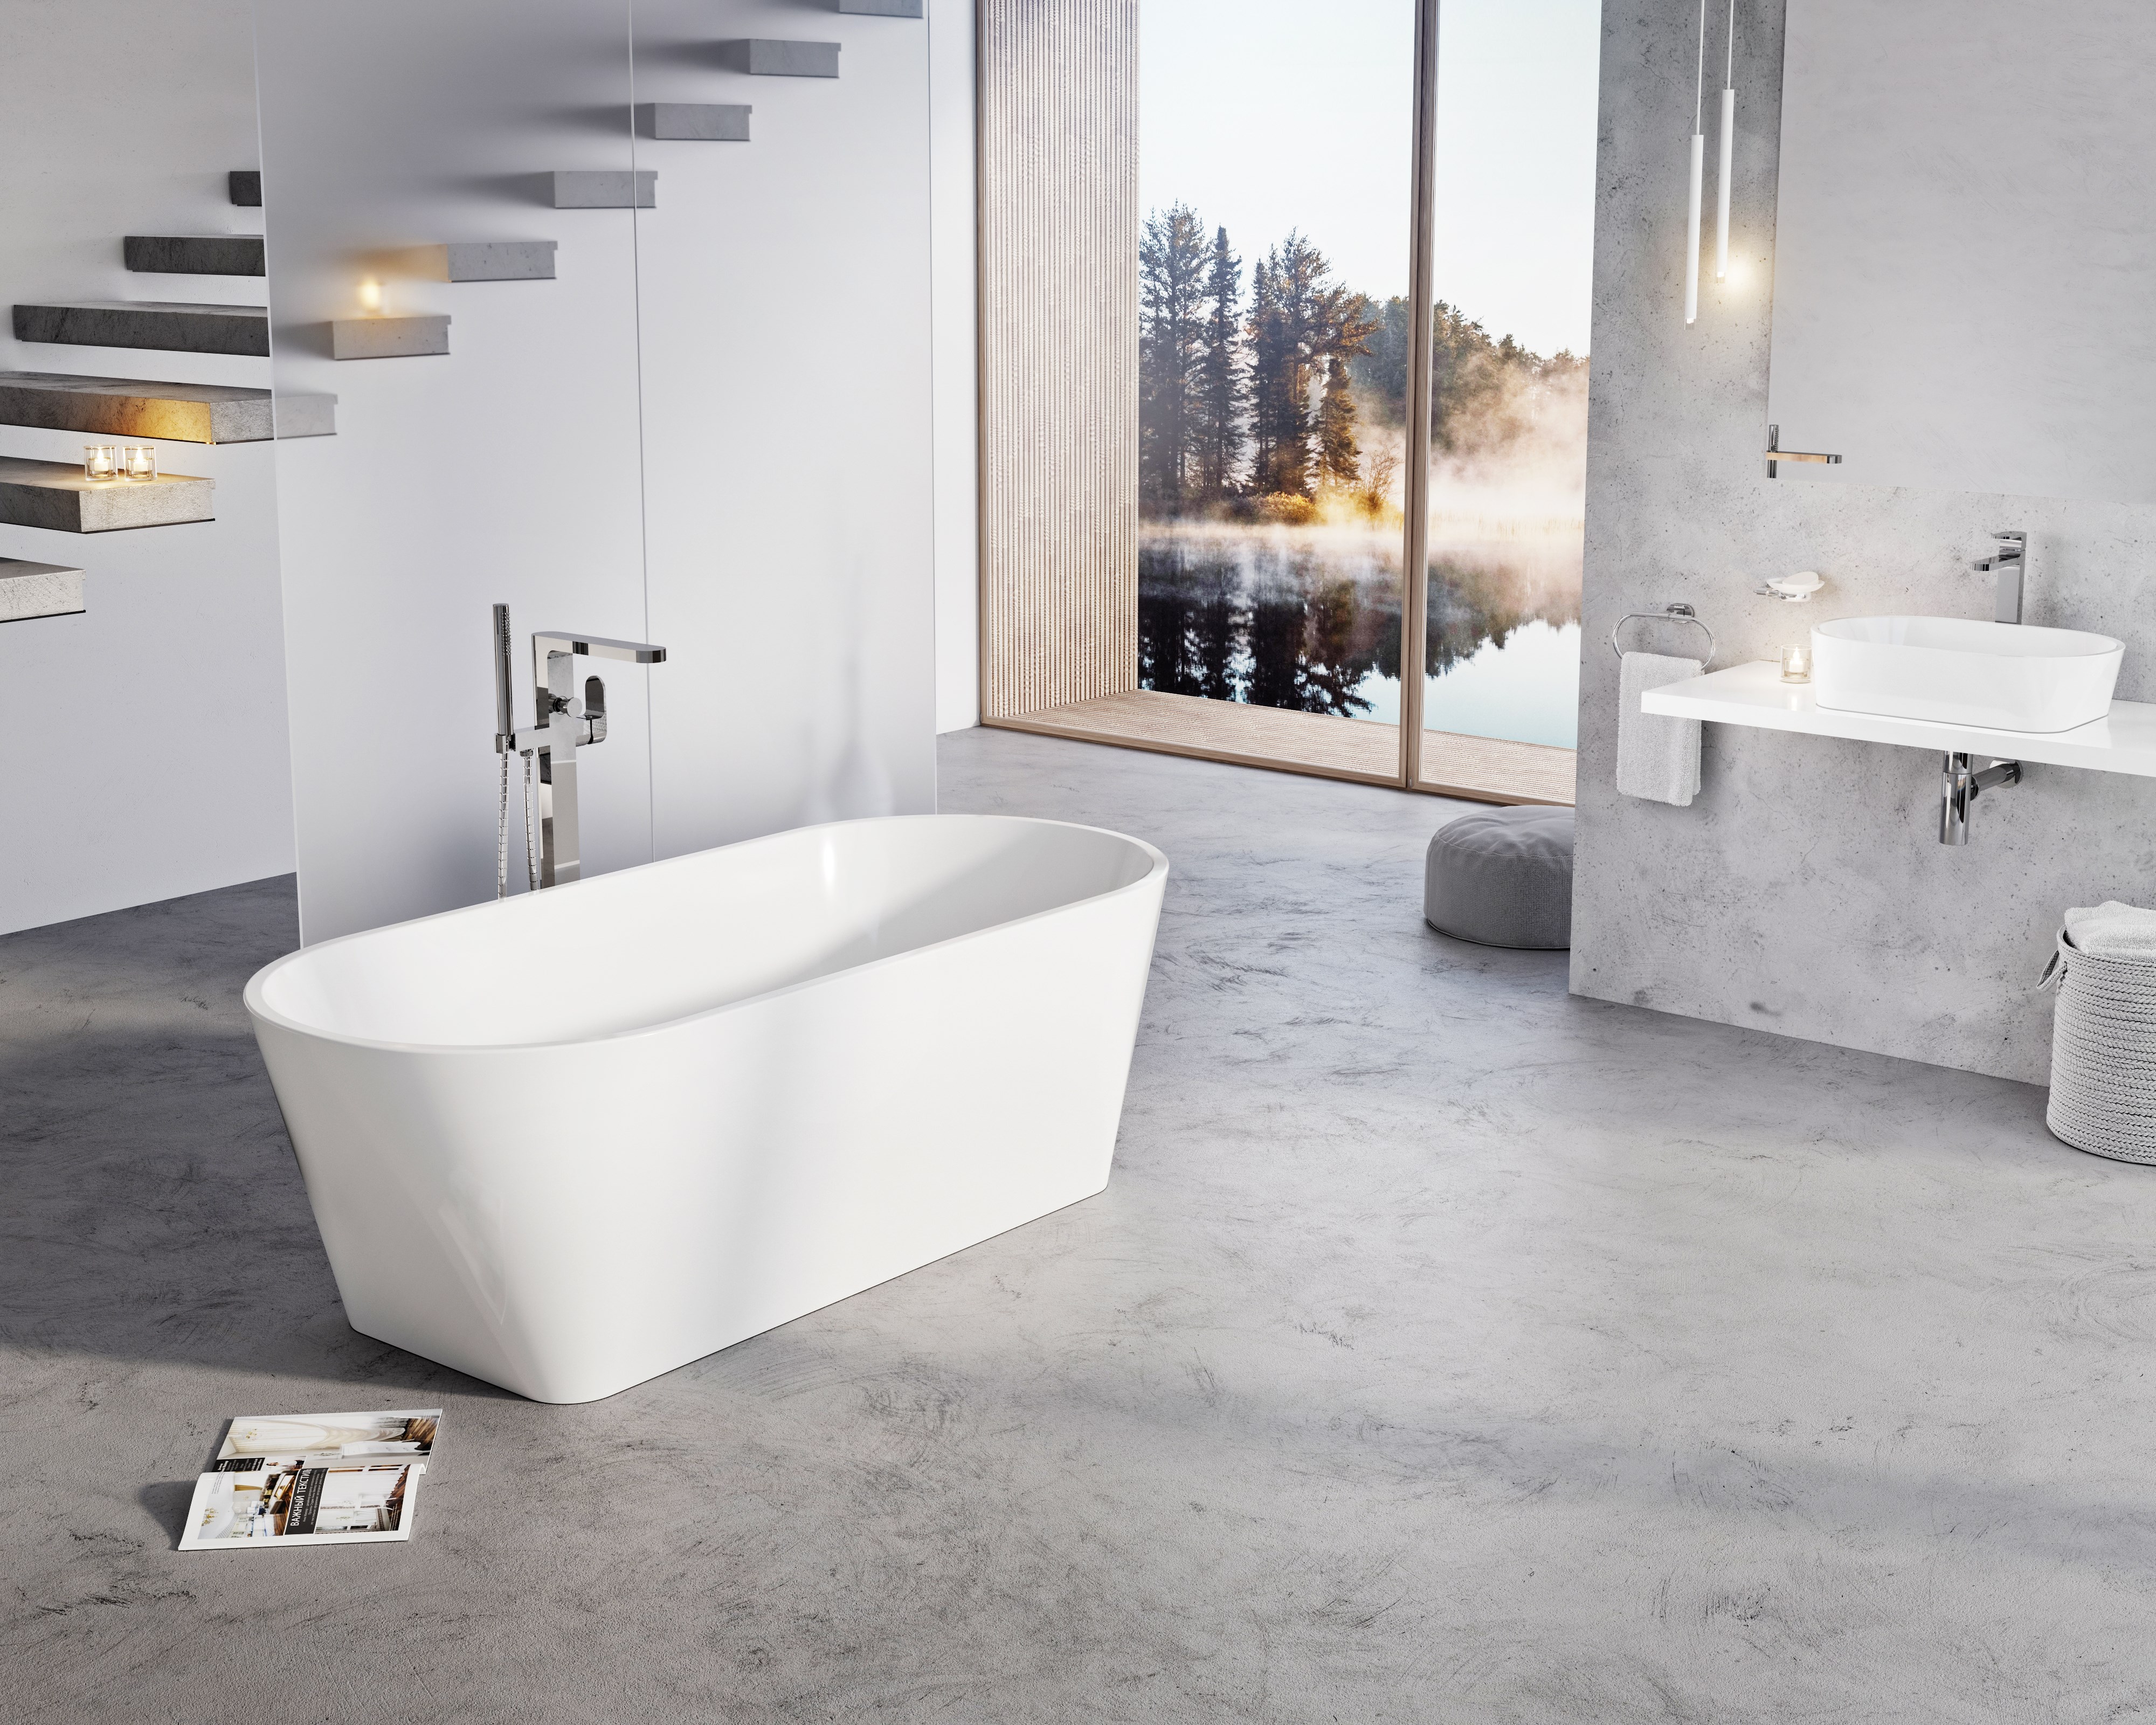 A Solo kád eleganciája a nemzetközi fürdőszobapiacon is elismerést szerzett.